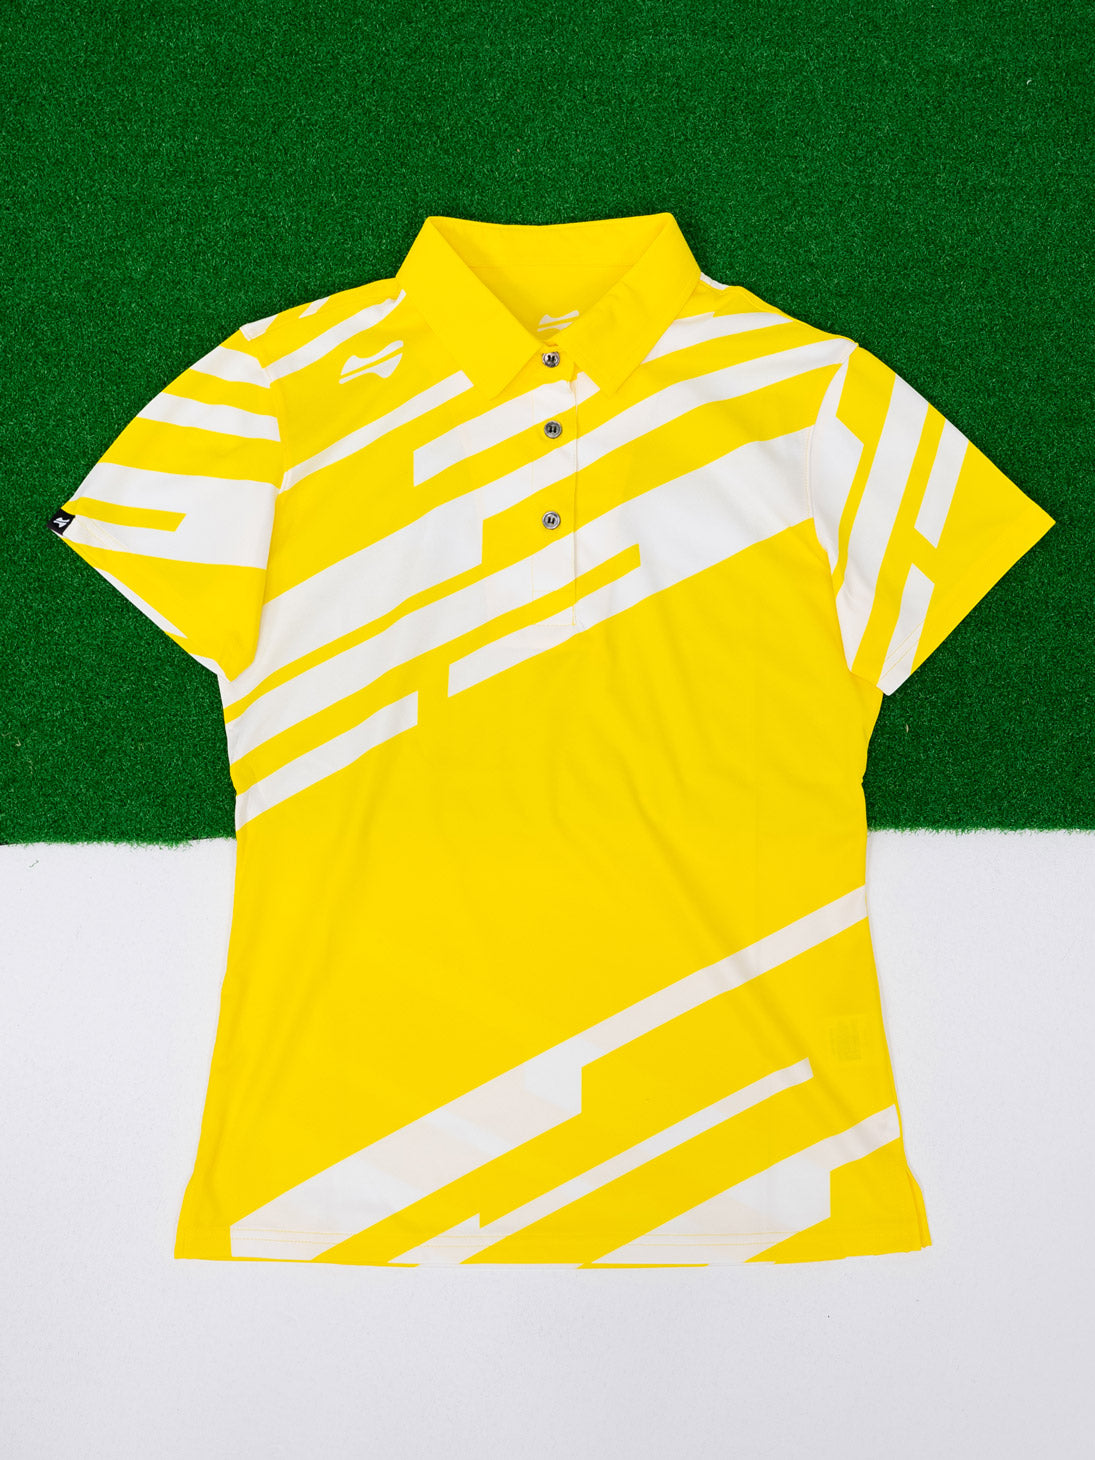 【お求めやすい価格になりました】レディーススラッシュゴルフ半袖ポロシャツ-イエロー